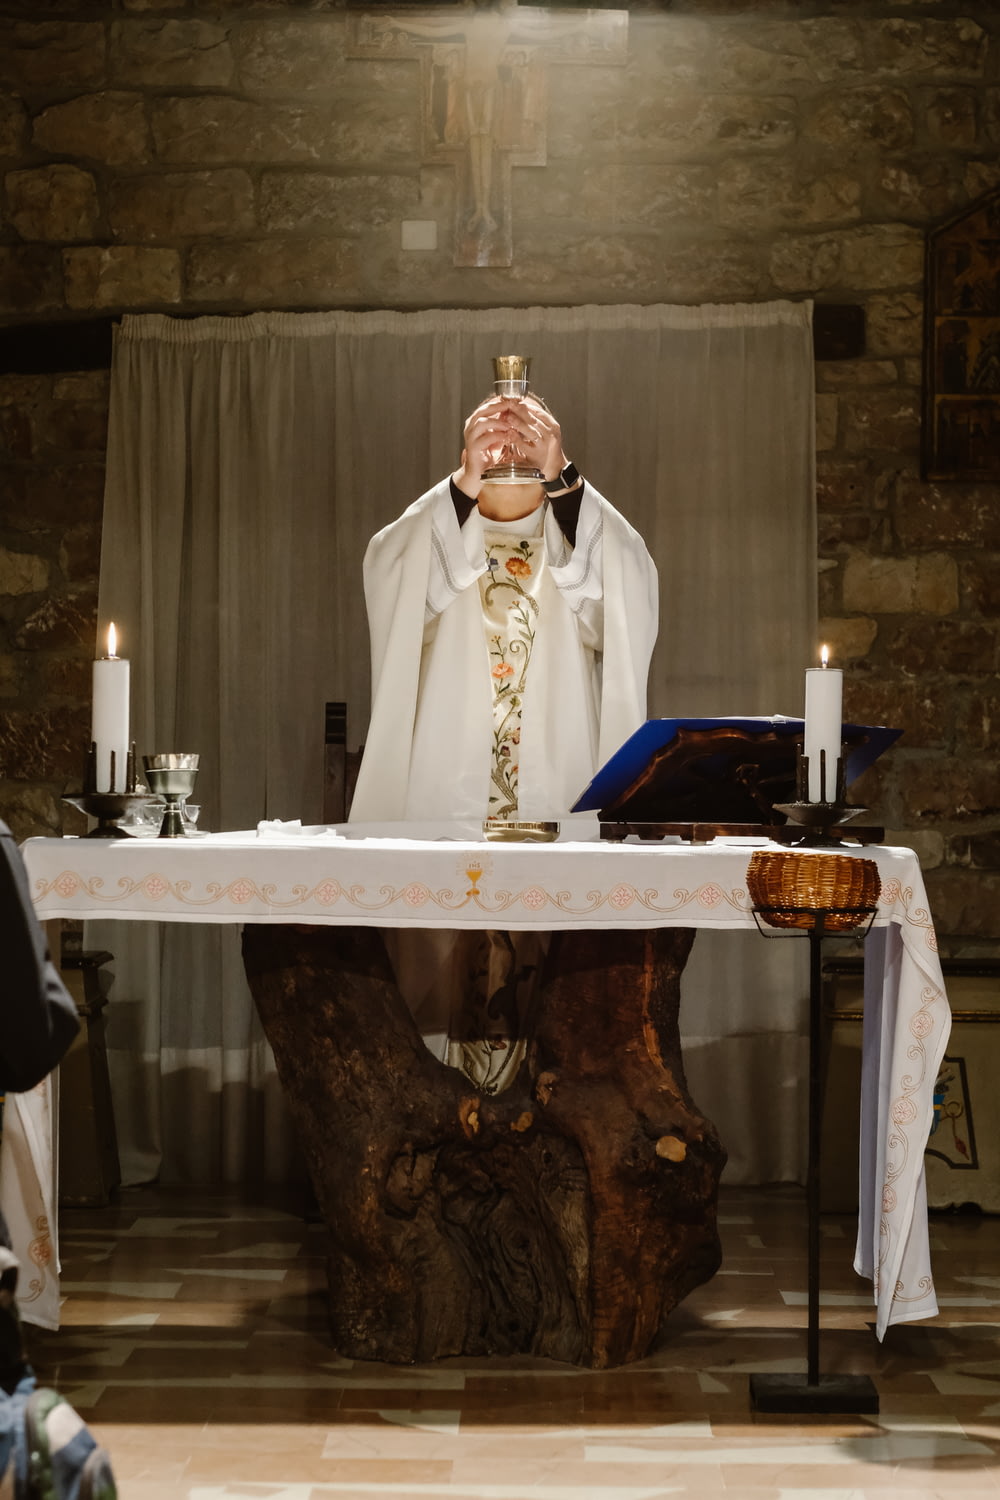 Priester hebt Becher an, während er neben dem Tisch steht